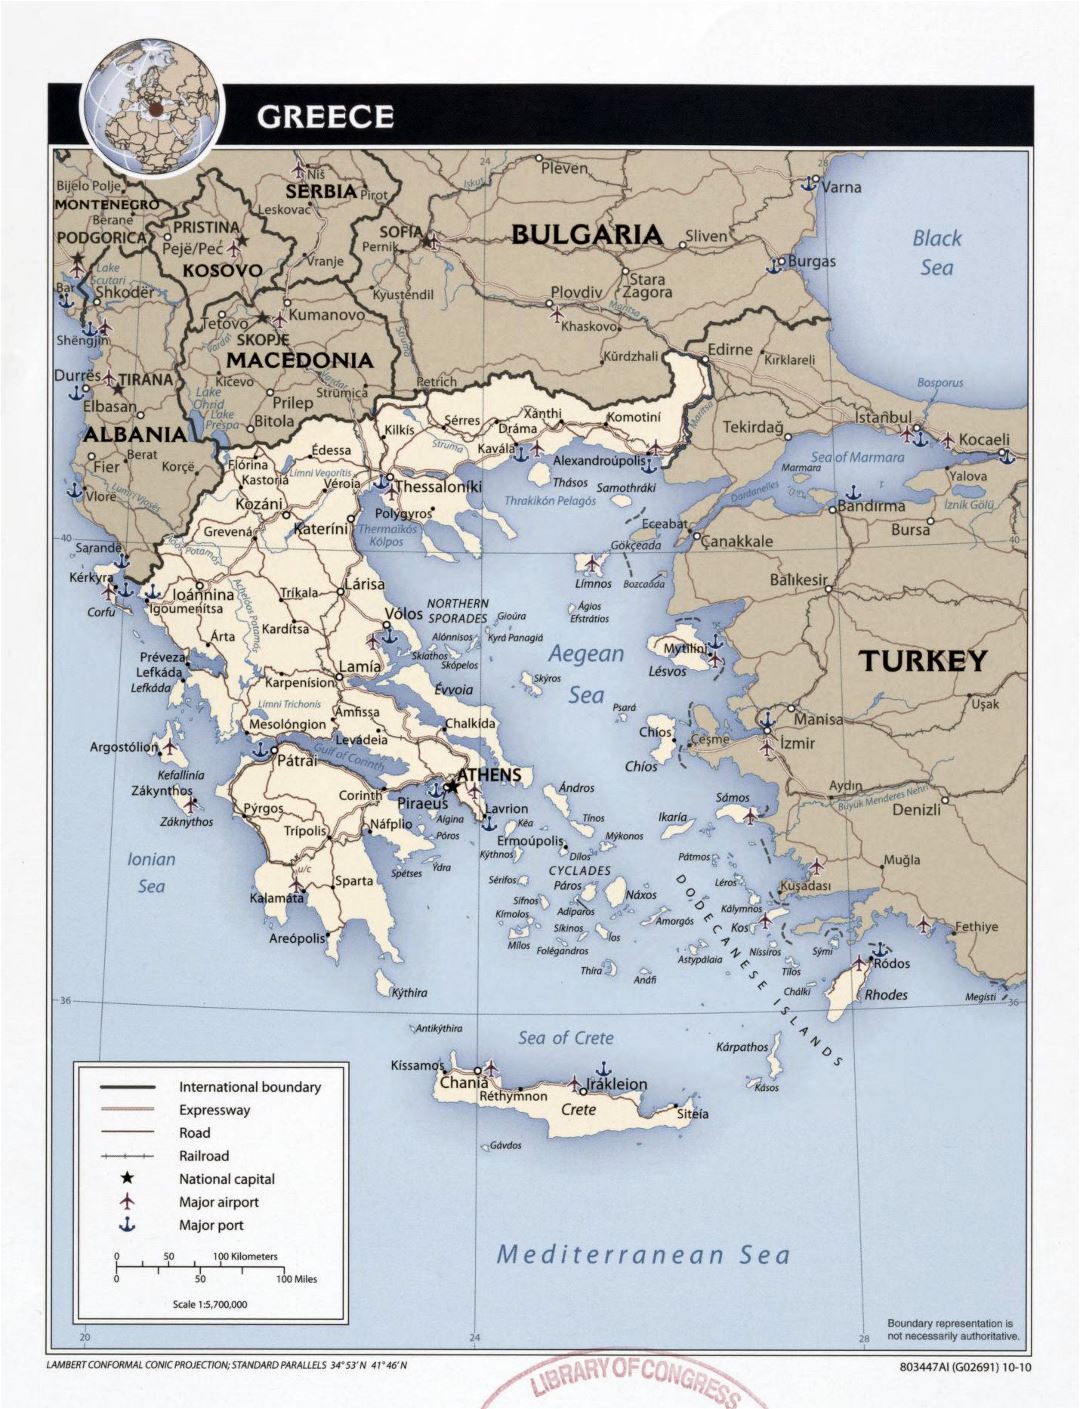 Большая детальная политическая карта Греции с дорогами, крупными городами, аэропортами и портами - 2010